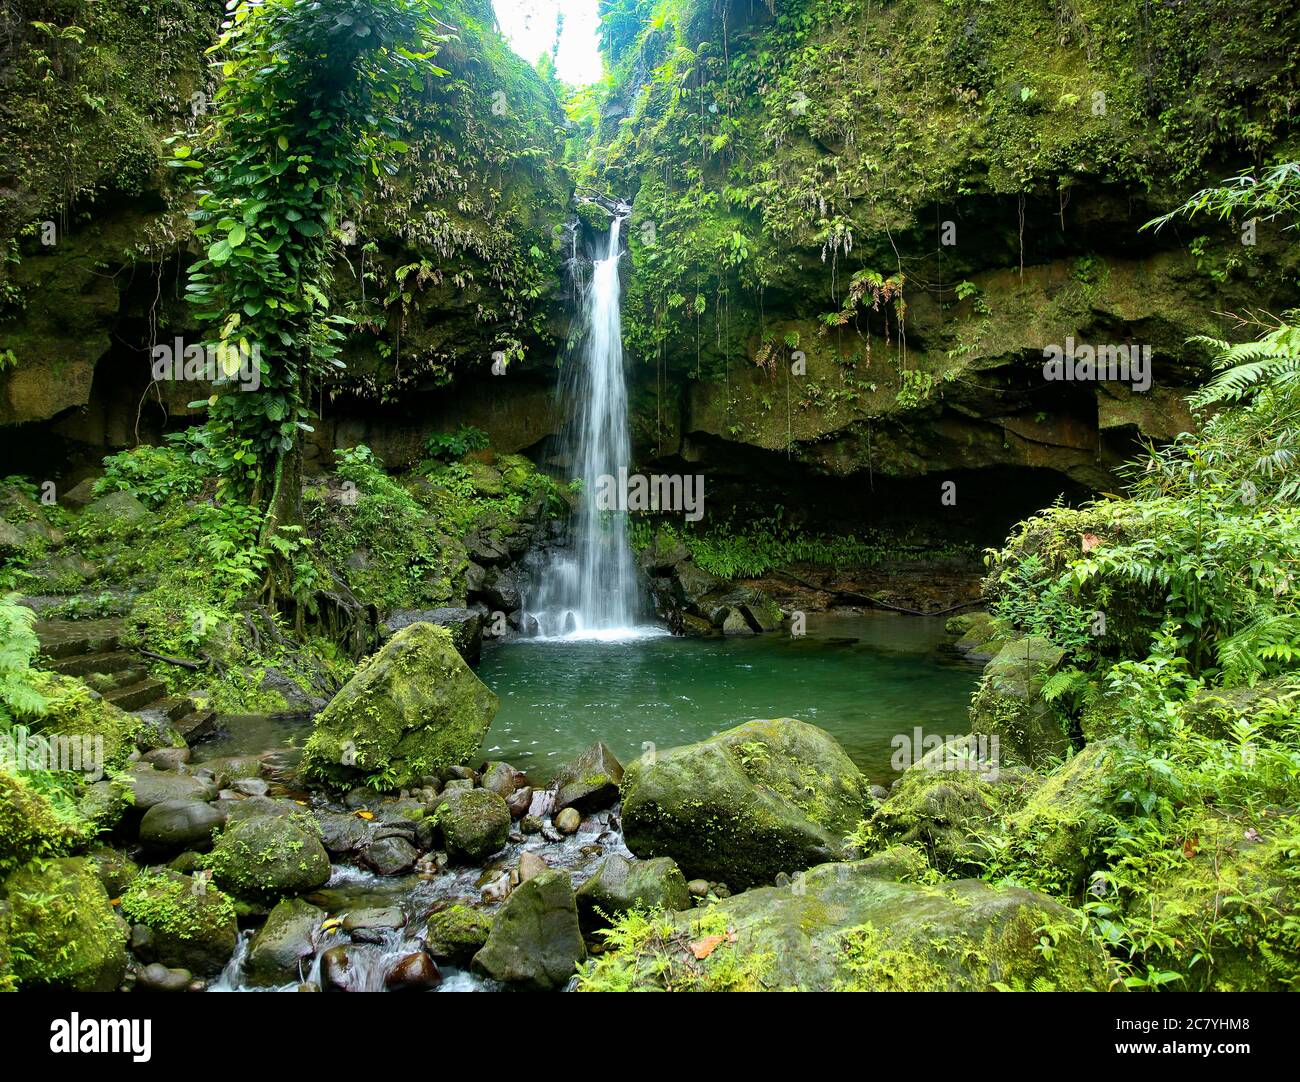 Emerald Pool waterfall in Dominica Stock Photo - Alamy